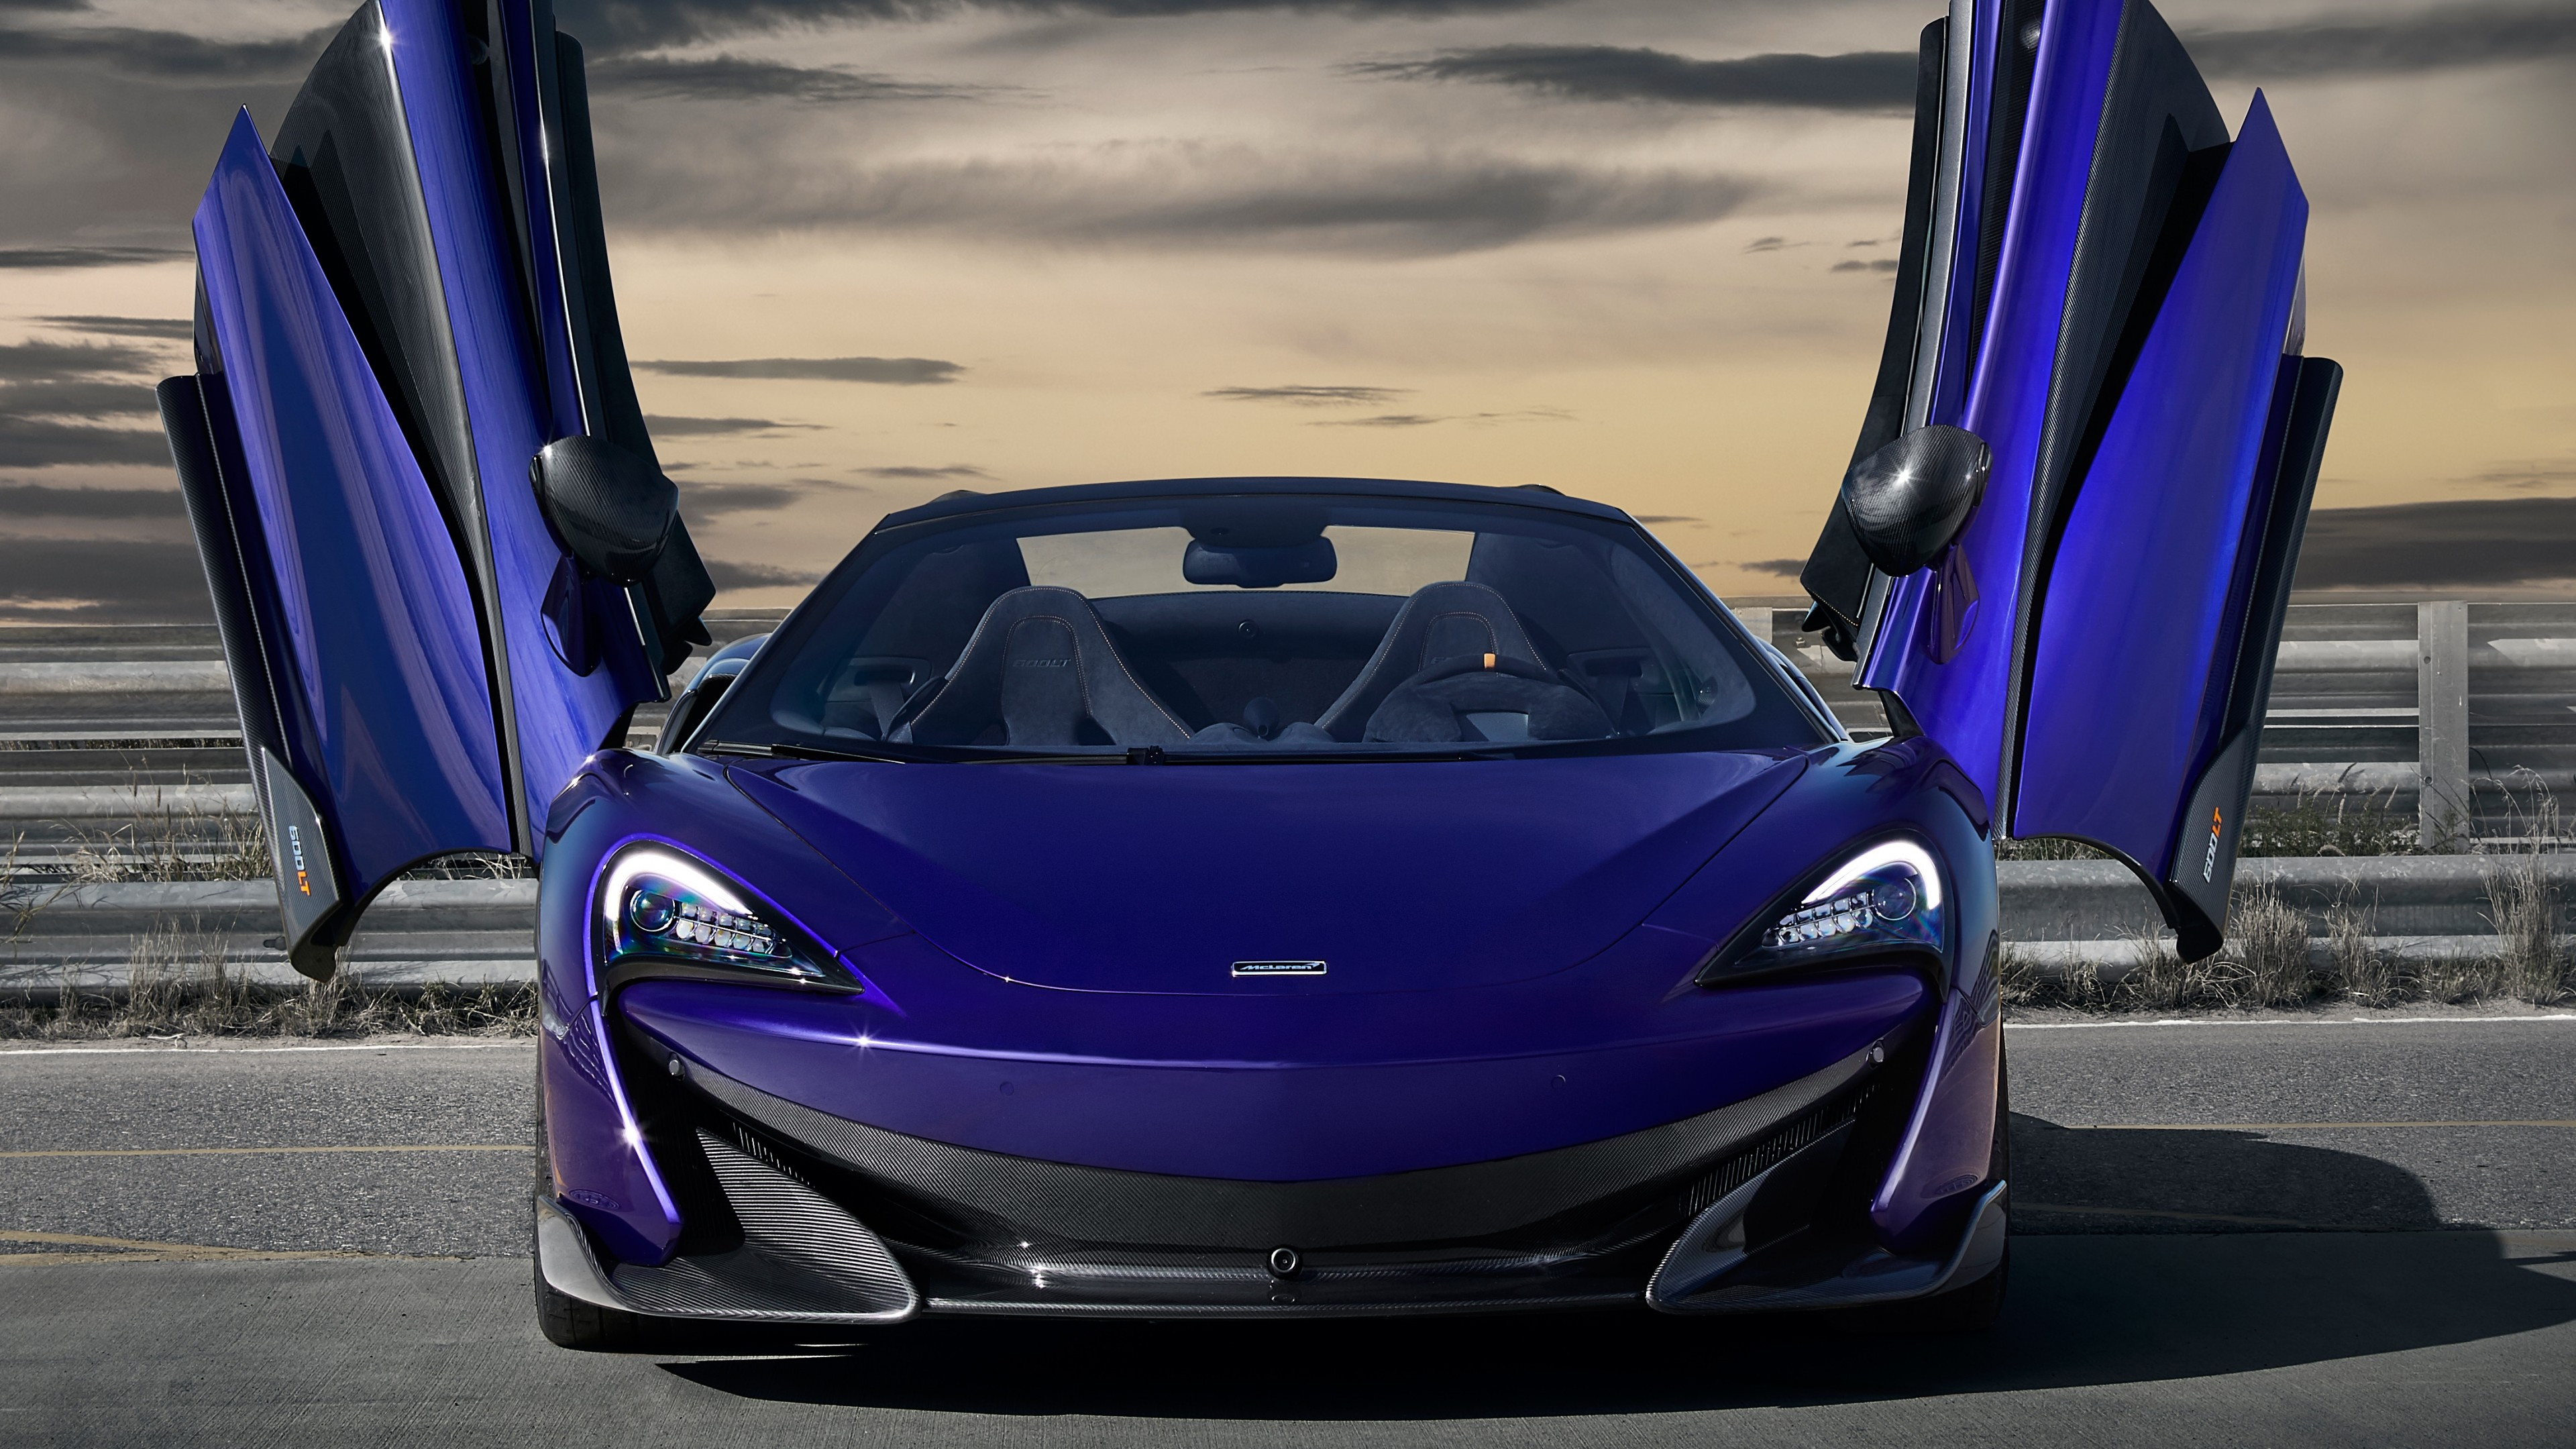 McLaren 600LT, Blue doors marvel, Supercar perfection, UHD TV wallpapers, 3840x2160 4K Desktop